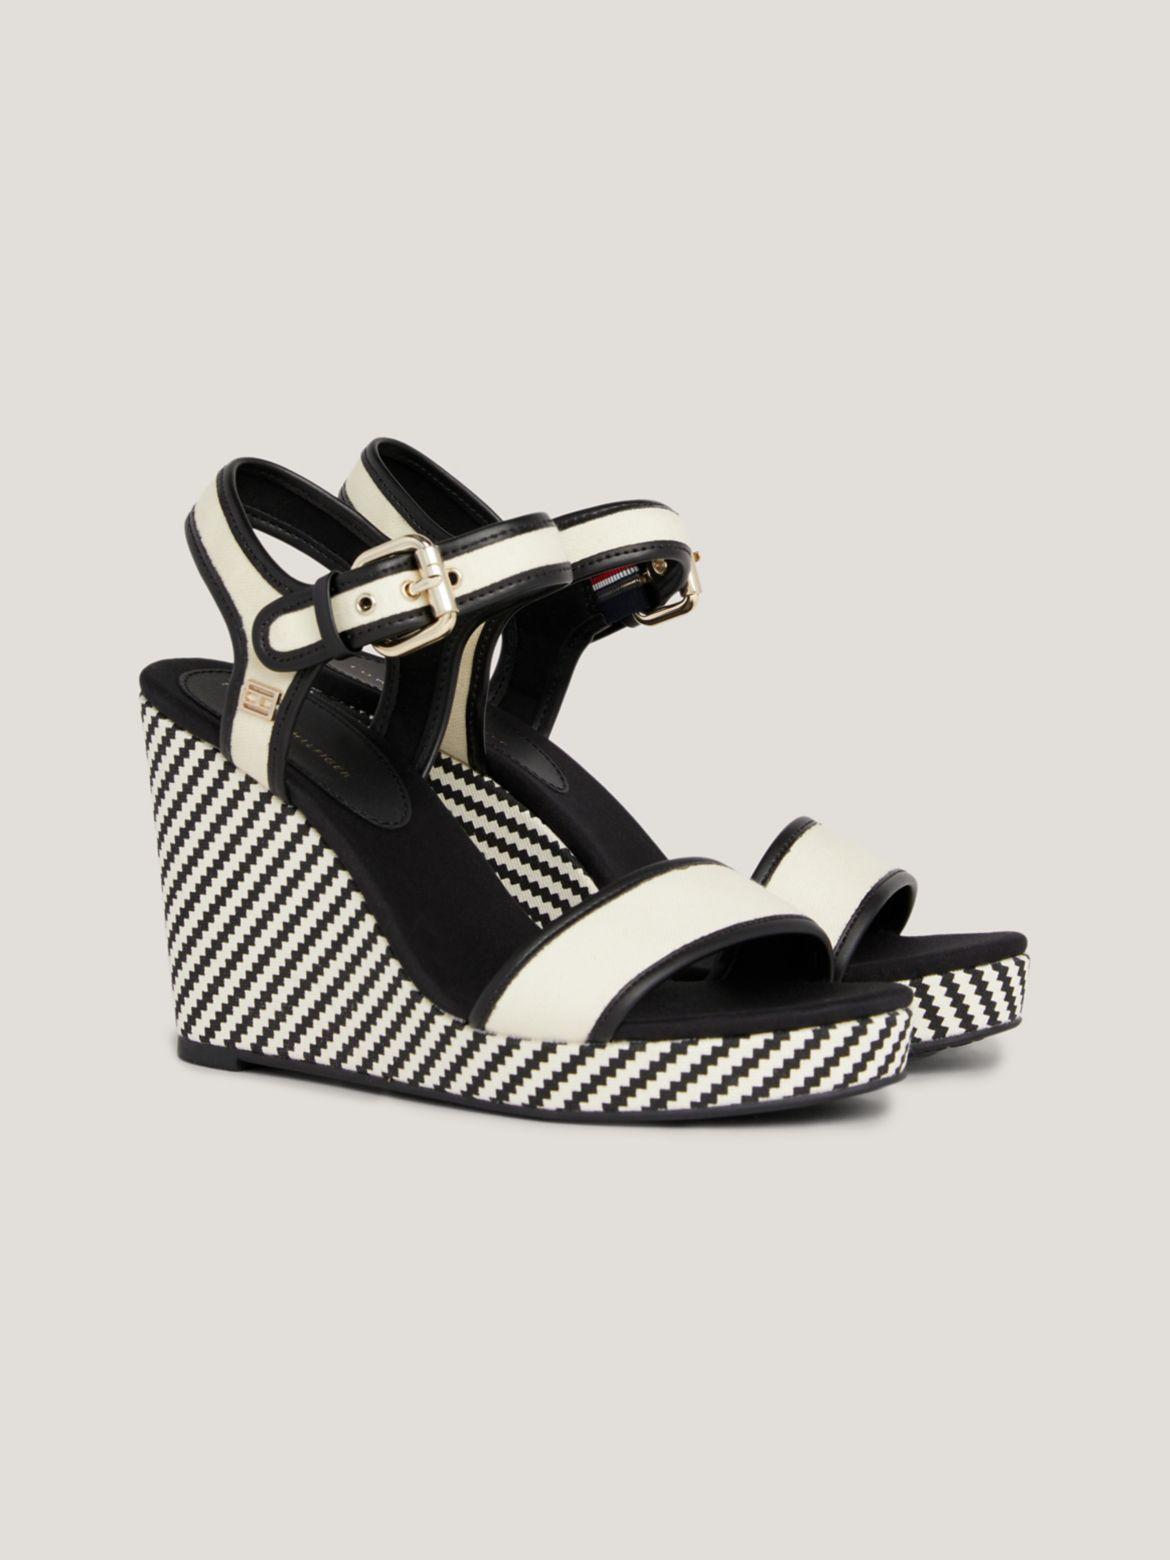 Tommy Hilfiger Women's Platform Wedge Heel Sandal Product Image